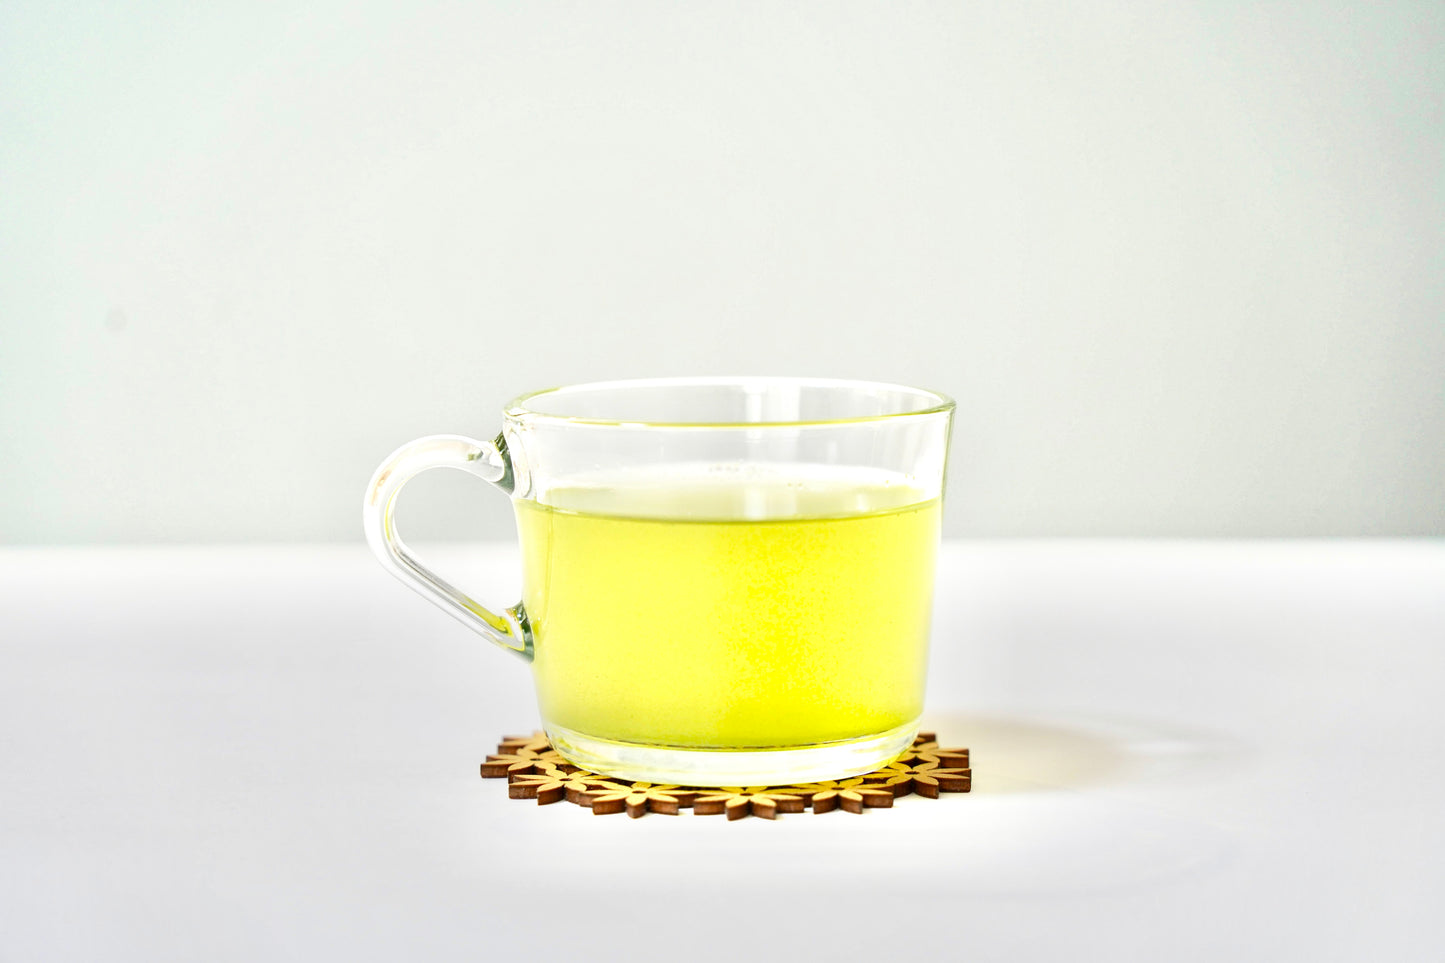 01 JAPANESE GREEN TEA [Sencha] Tea bag